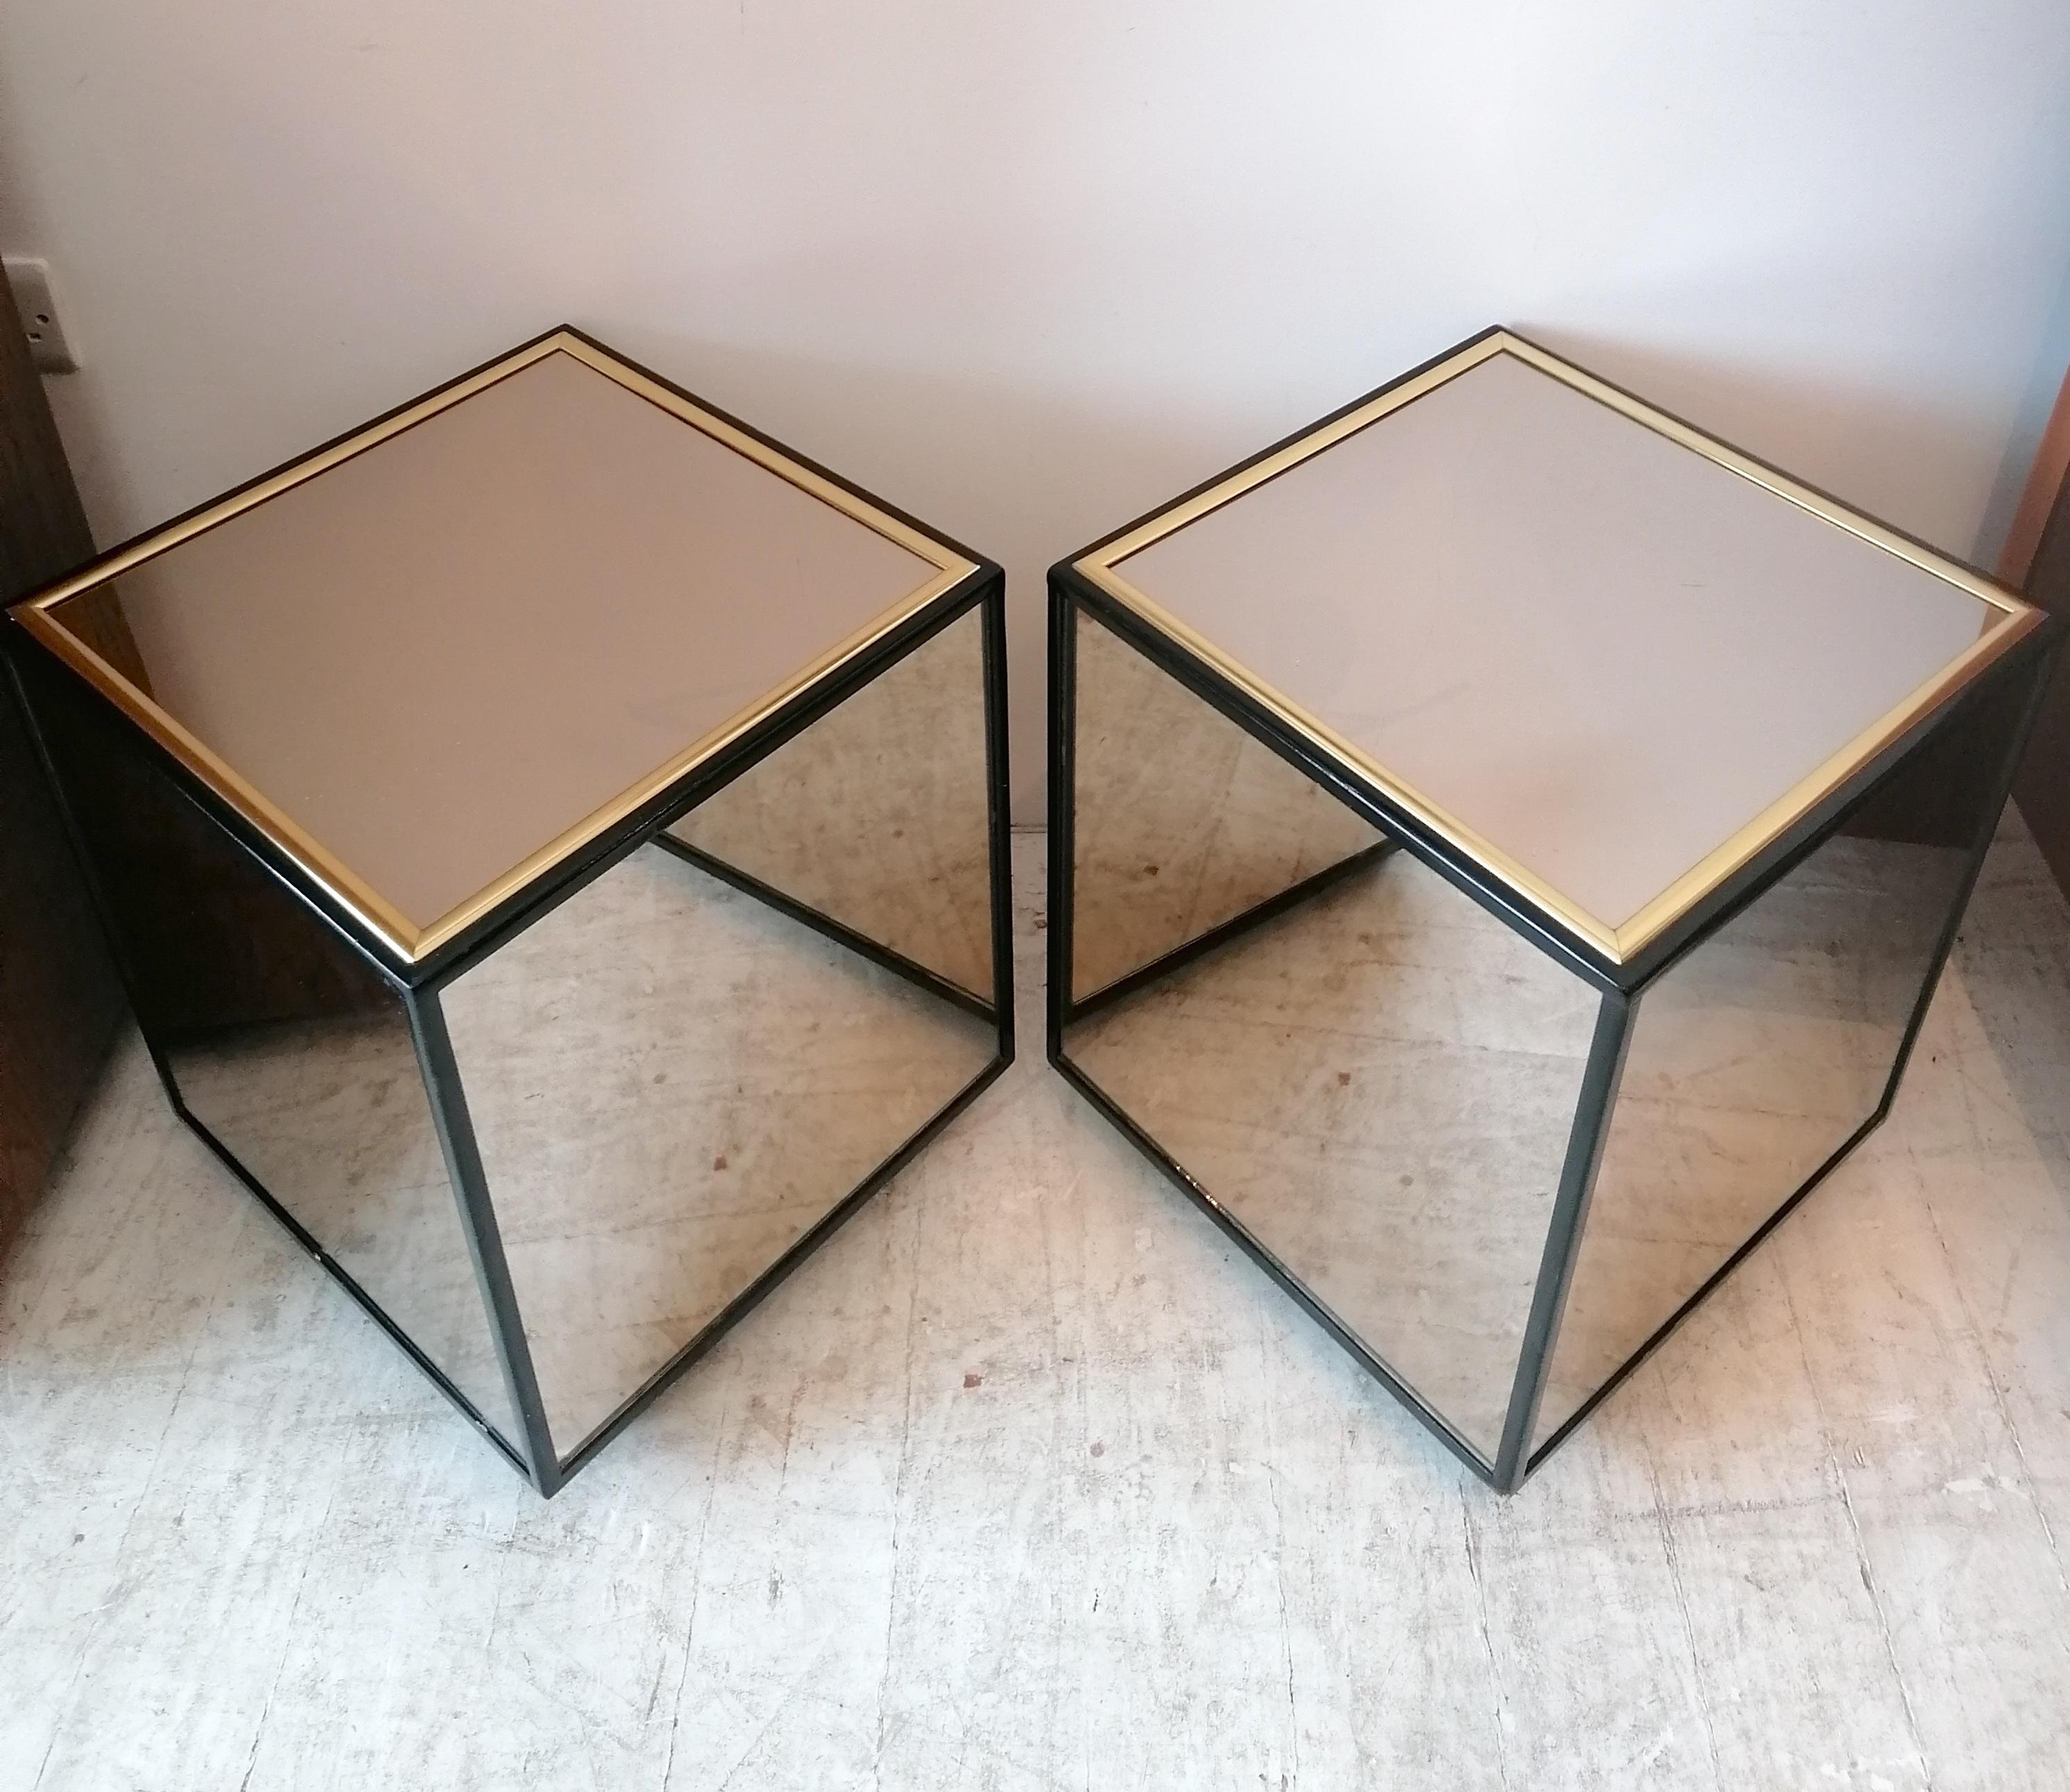 Paar Spiegelwürfel-Beistelltische von Henredon, USA 1970er Jahre. Scheiben aus Spiegelglas, schwarzer Lackrahmen mit goldenen Metalldetails.
Auch als Nachttischchen geeignet.

Abmessungen: Breite 40cm, Tiefe 40cm, Höhe 49cm
